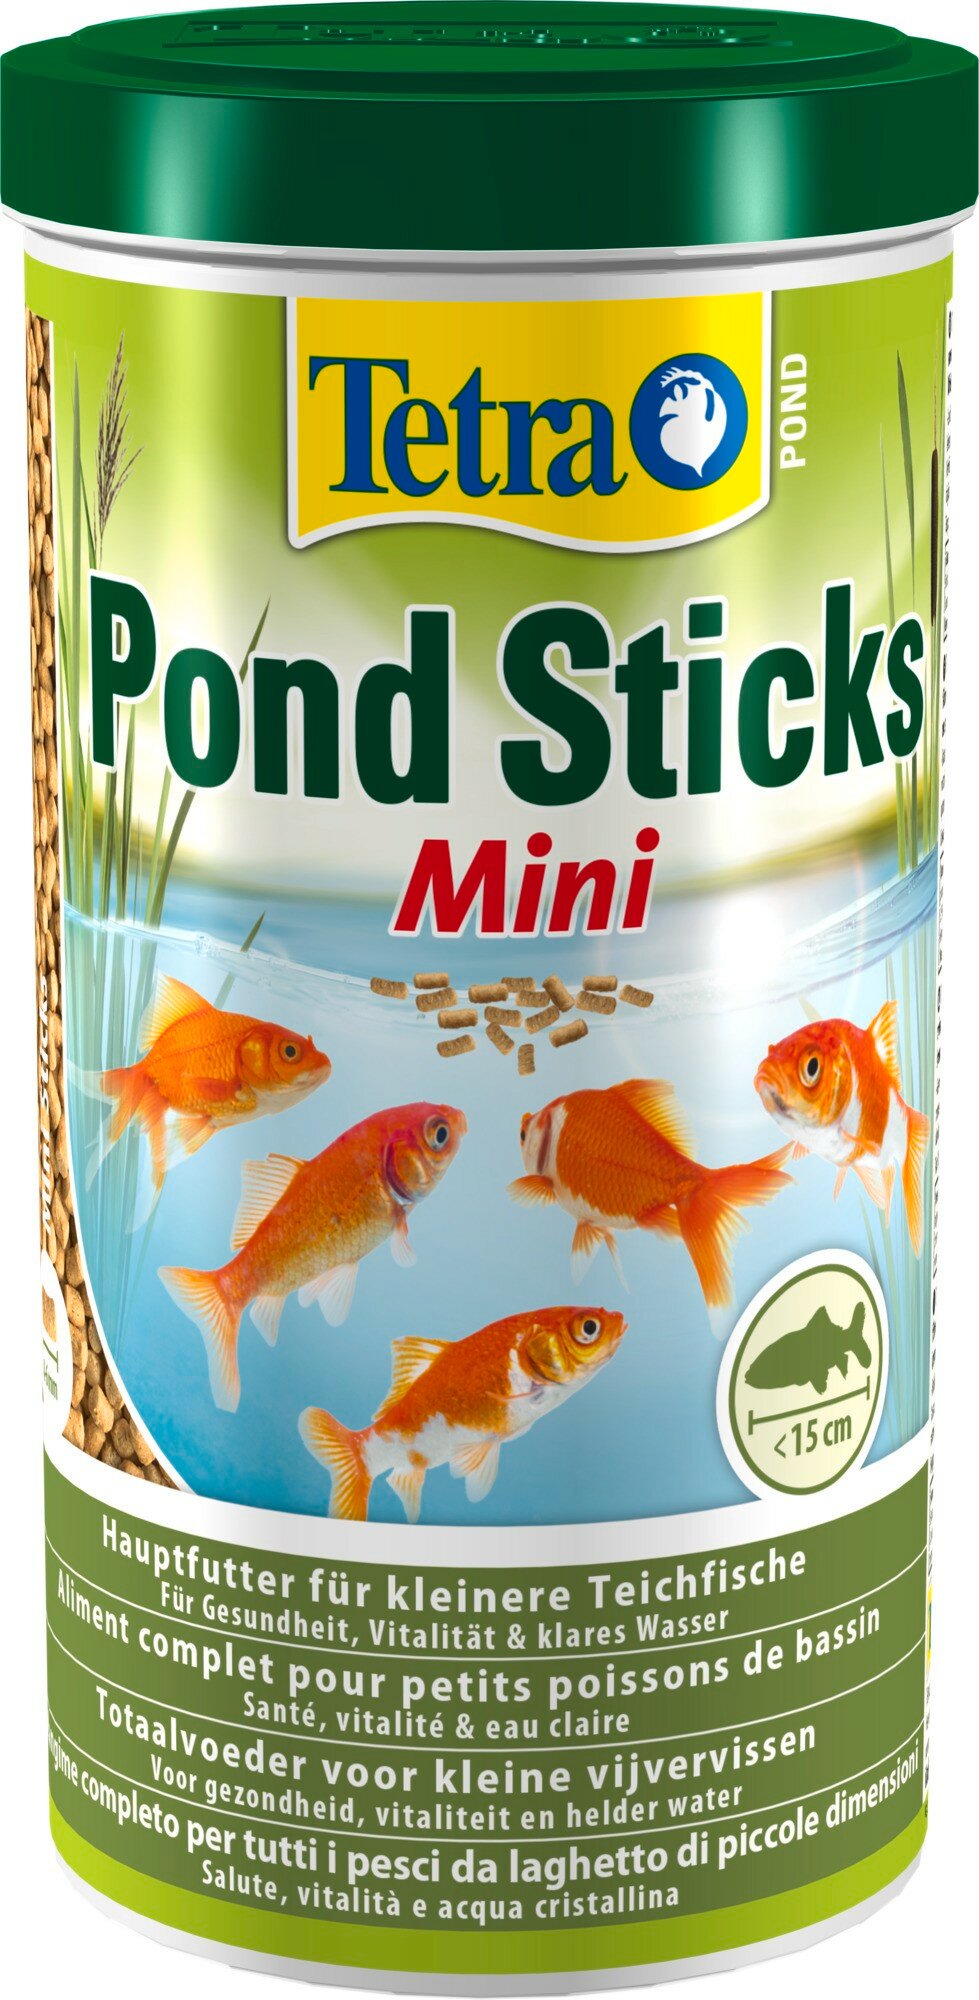 Корм для мелких прудовых рыб Tetra Pond Sticks Mini 1 л минипалочки для всех видов мелких прудовых рыб (до 15 см)